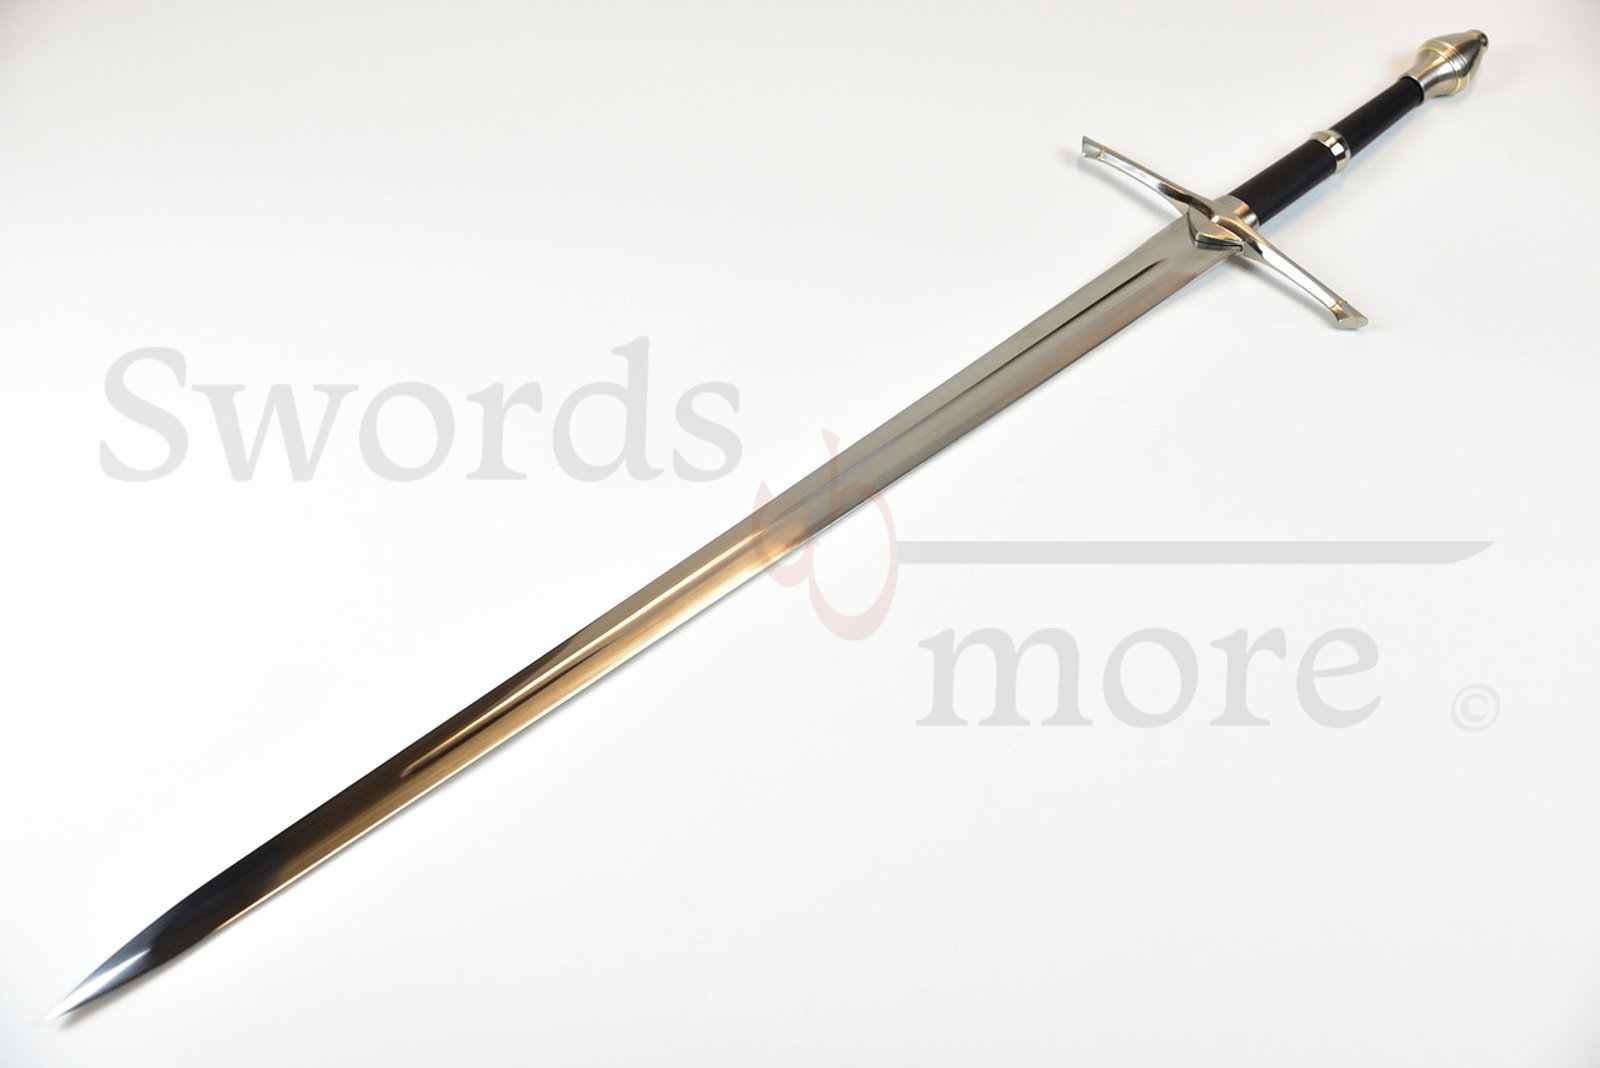 Ranger-Schwert 